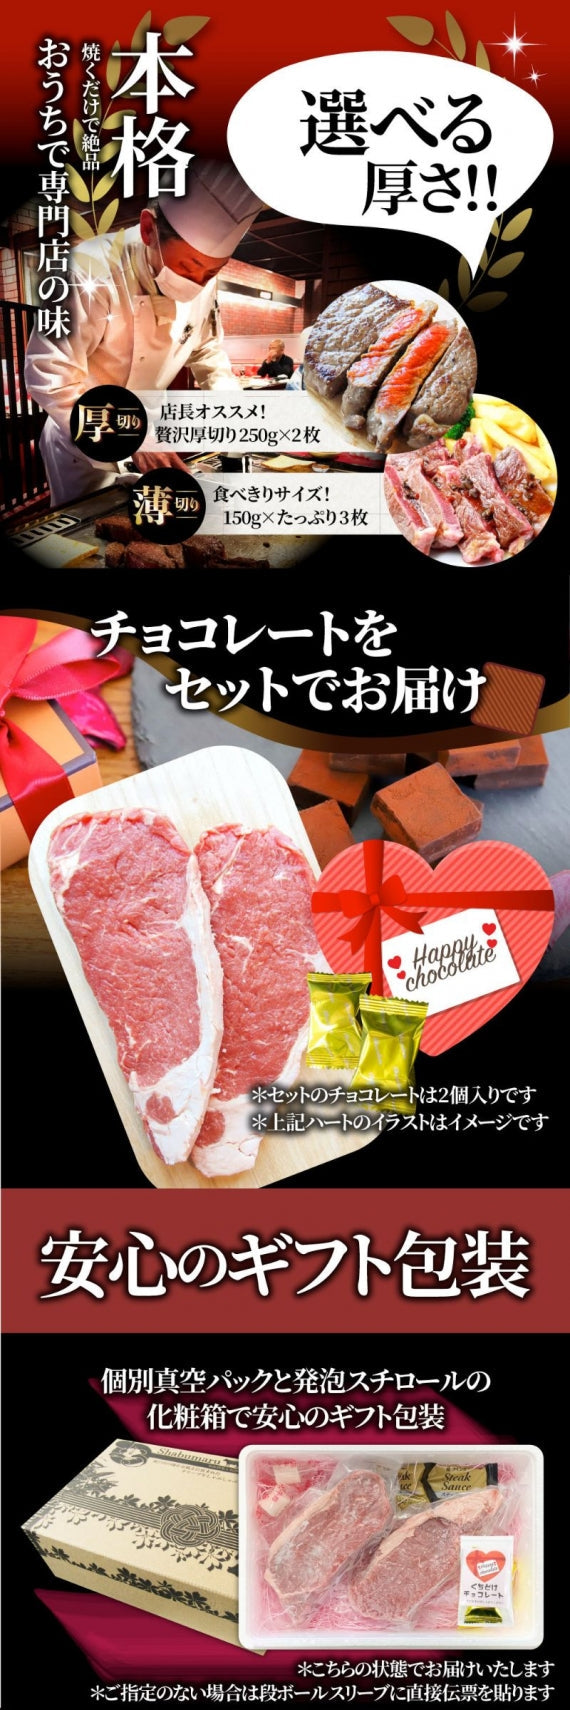 肉 お歳暮 ギフト 食品 チョコ チョコレート 牛肉 牛 サーロイン ステーキ 選べるカット 150g×3 赤身 贅沢 プレゼント 牛肉 送料無料 あすつく